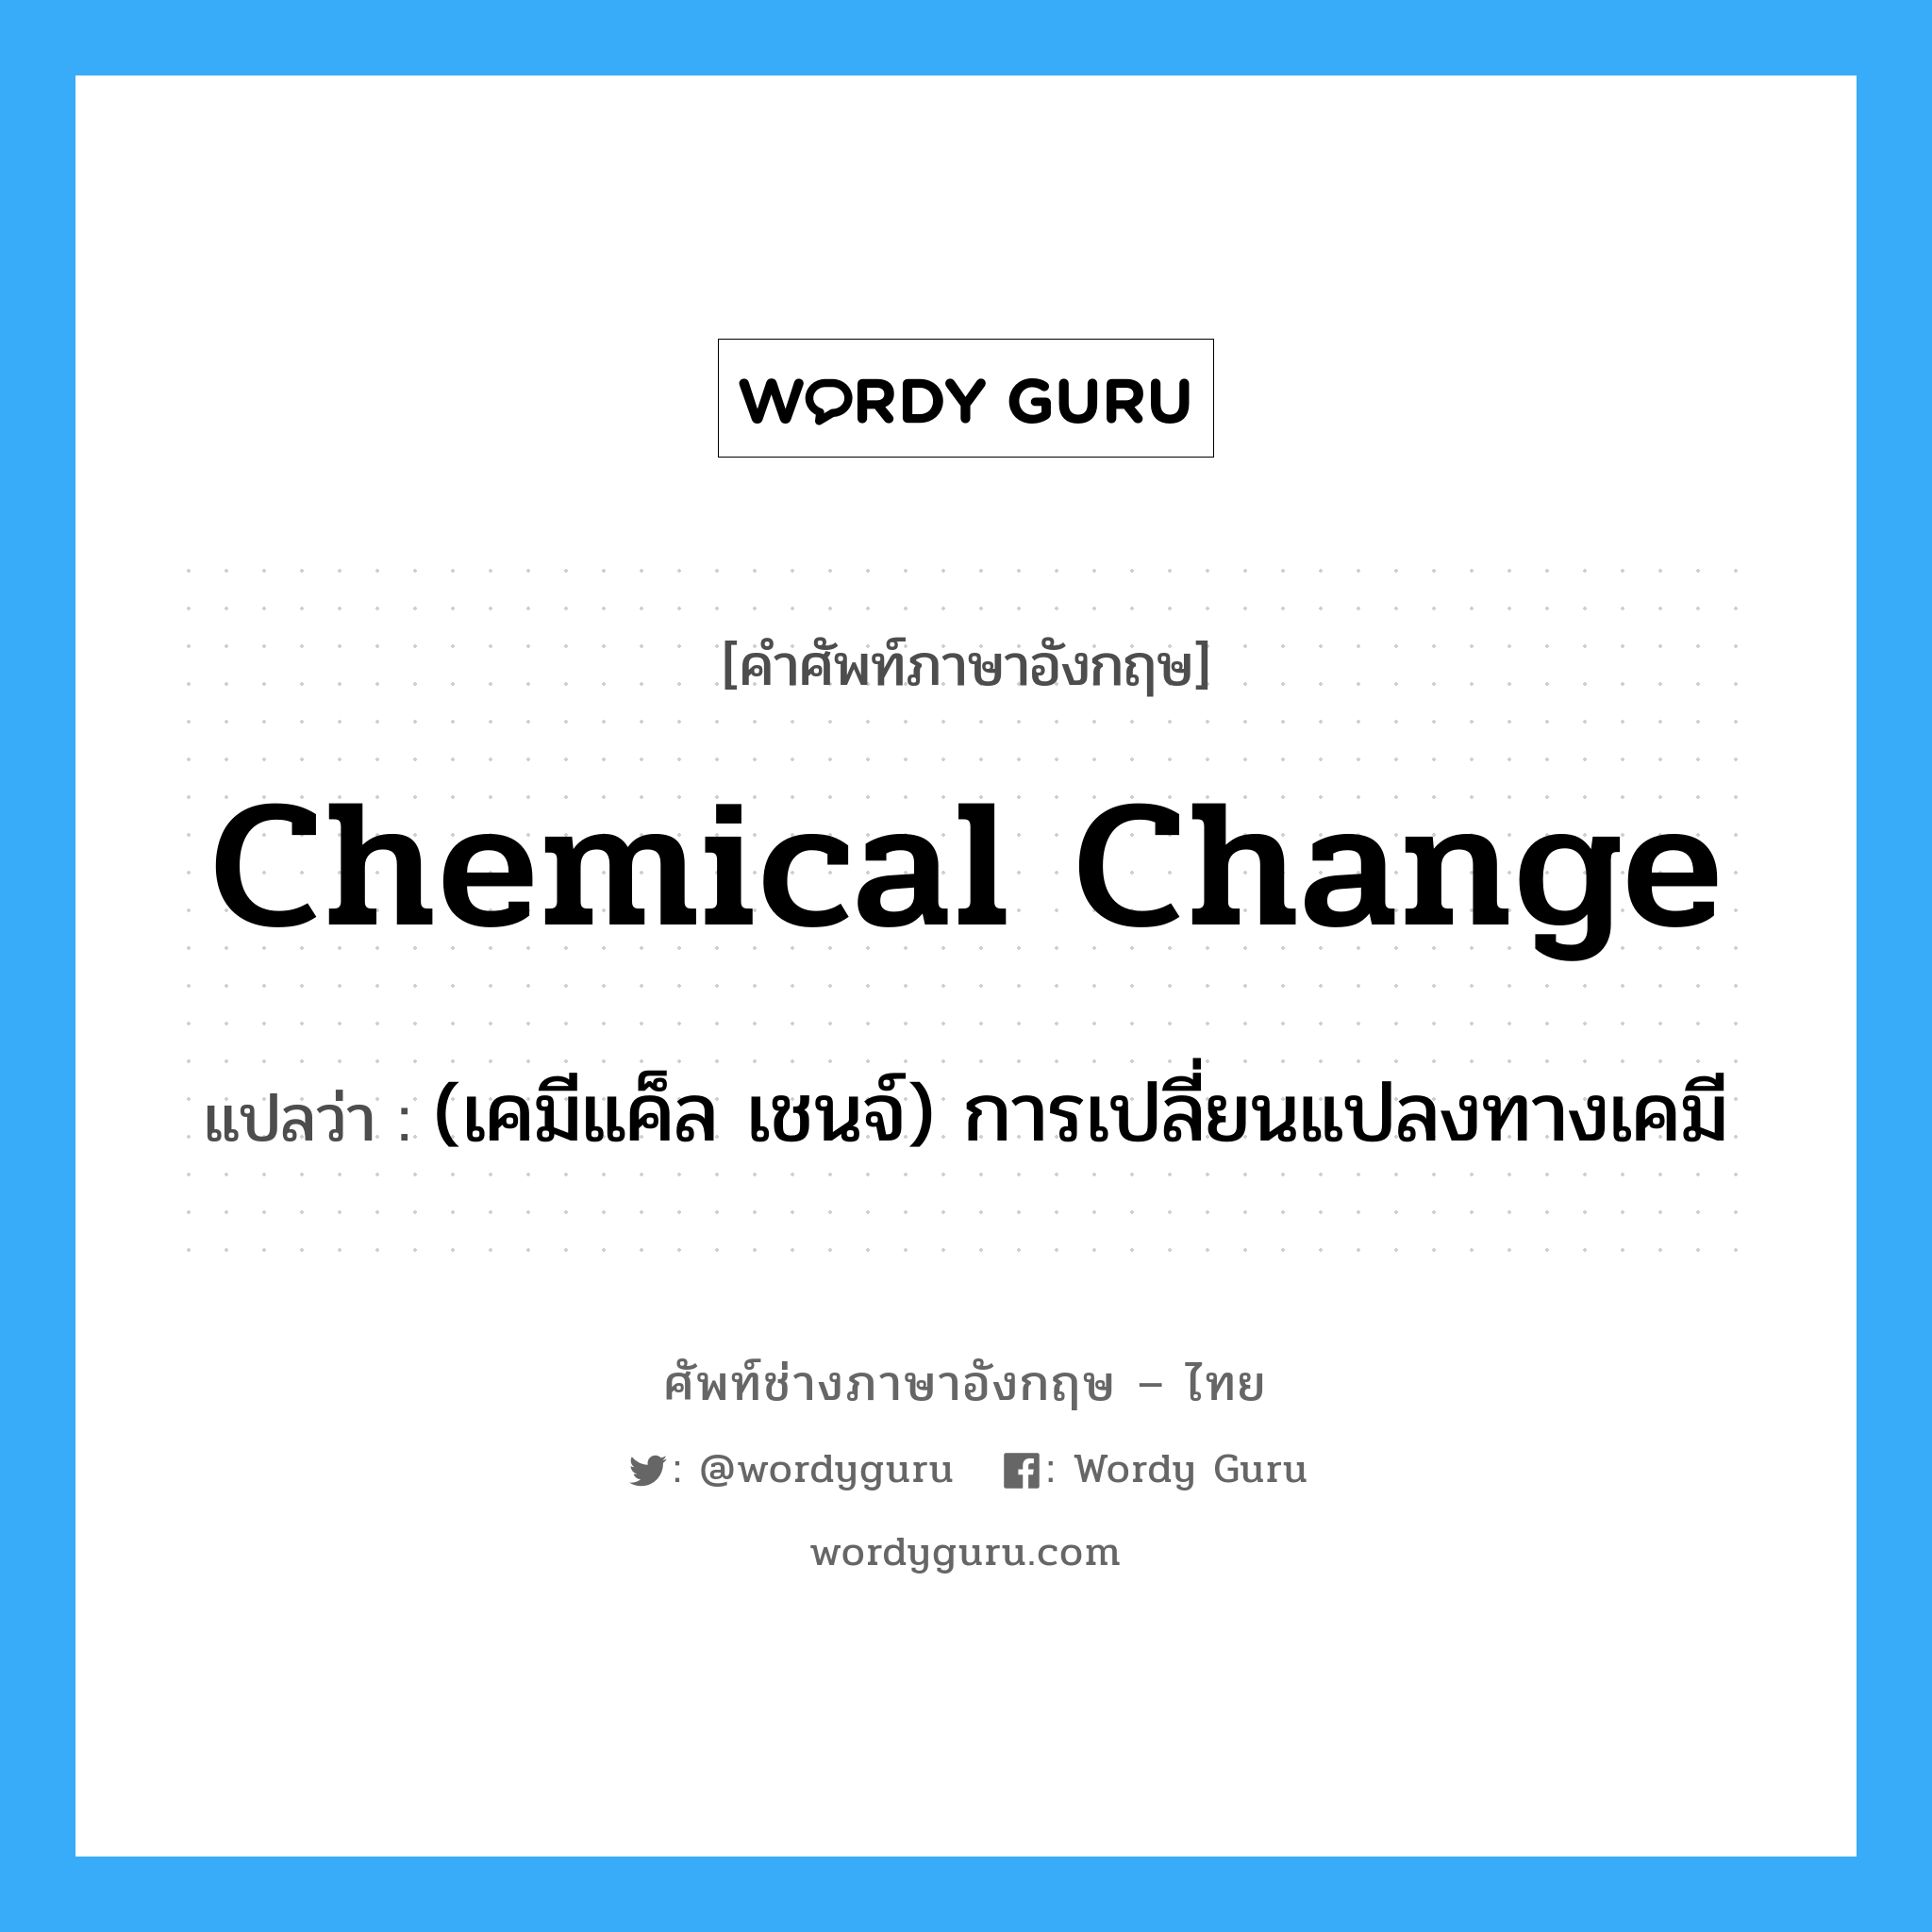 (เคมีแค็ล เชนจ์) การเปลี่ยนแปลงทางเคมี ภาษาอังกฤษ?, คำศัพท์ช่างภาษาอังกฤษ - ไทย (เคมีแค็ล เชนจ์) การเปลี่ยนแปลงทางเคมี คำศัพท์ภาษาอังกฤษ (เคมีแค็ล เชนจ์) การเปลี่ยนแปลงทางเคมี แปลว่า chemical change